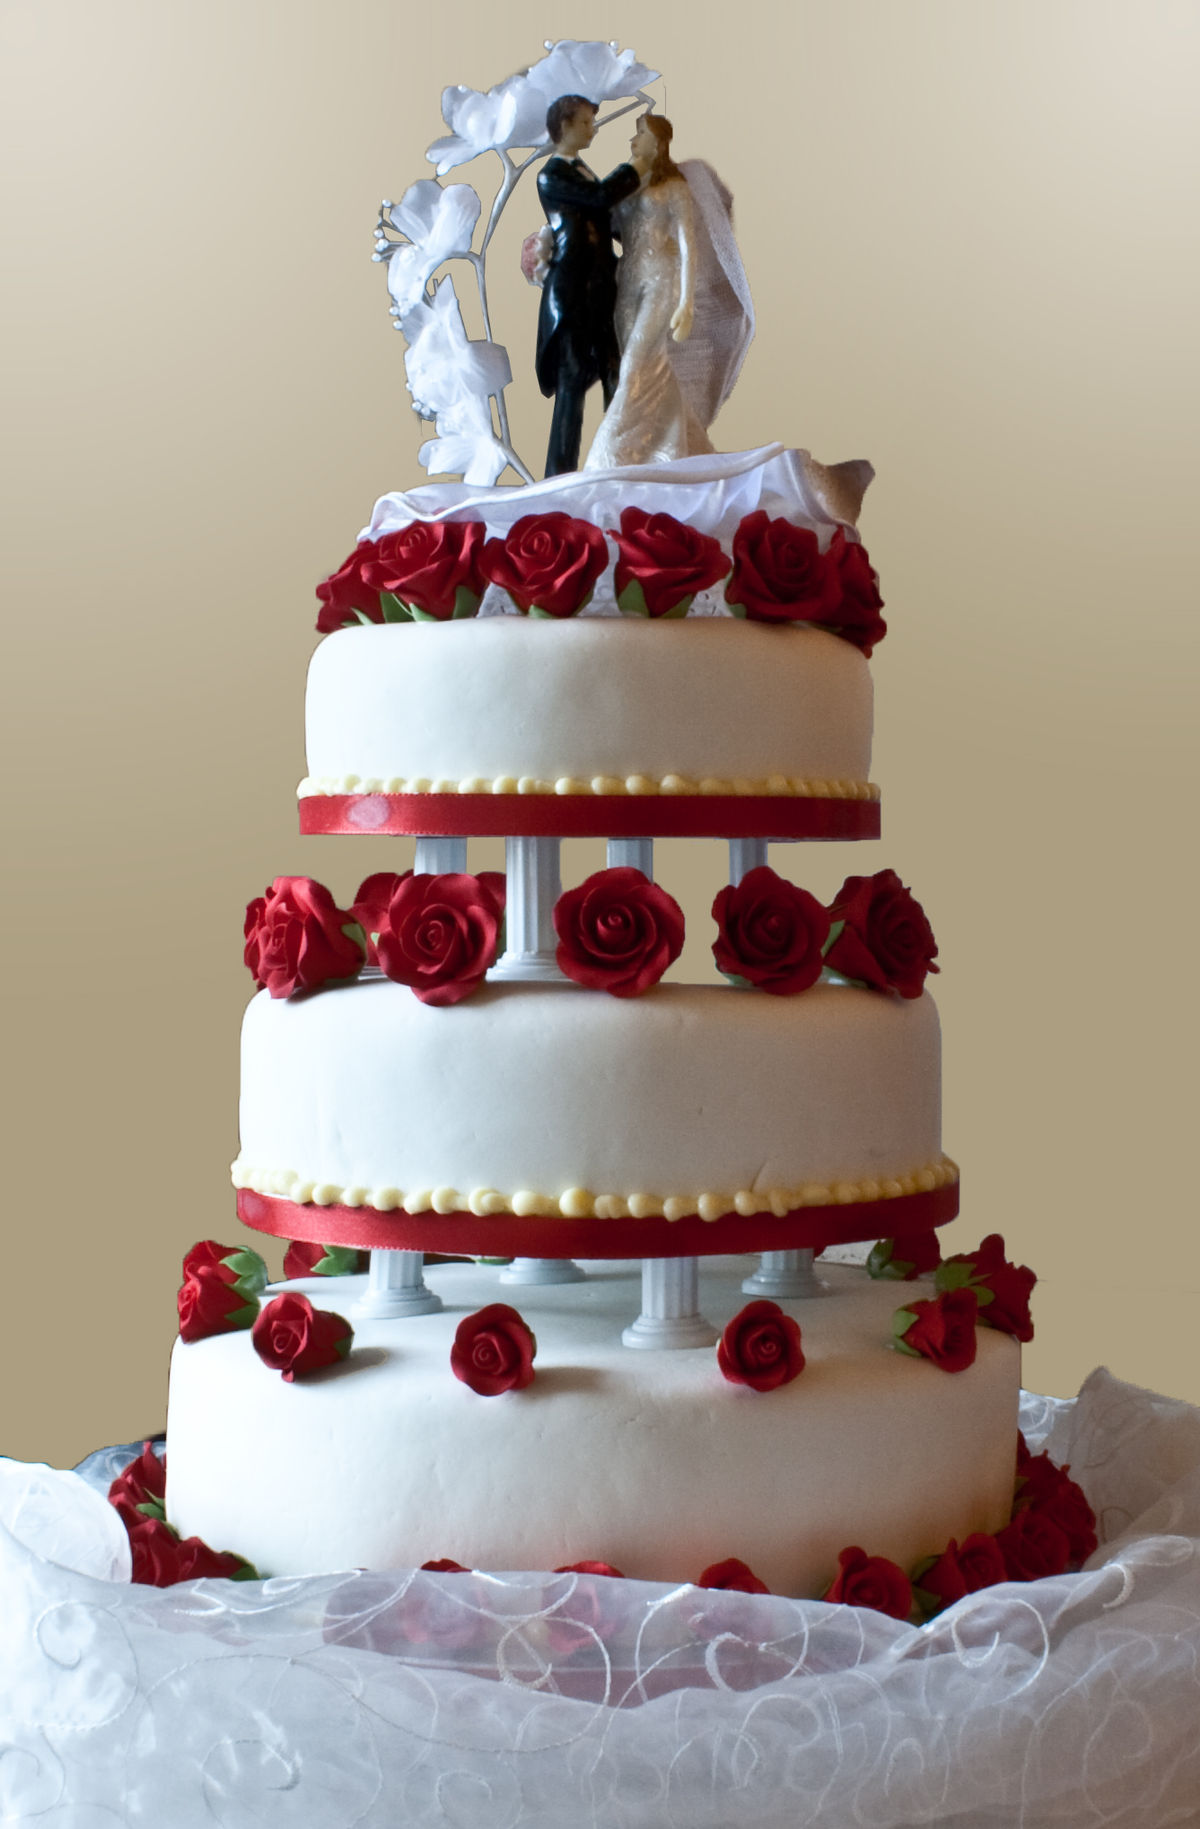 Marriage Cake Images - KibrisPDR